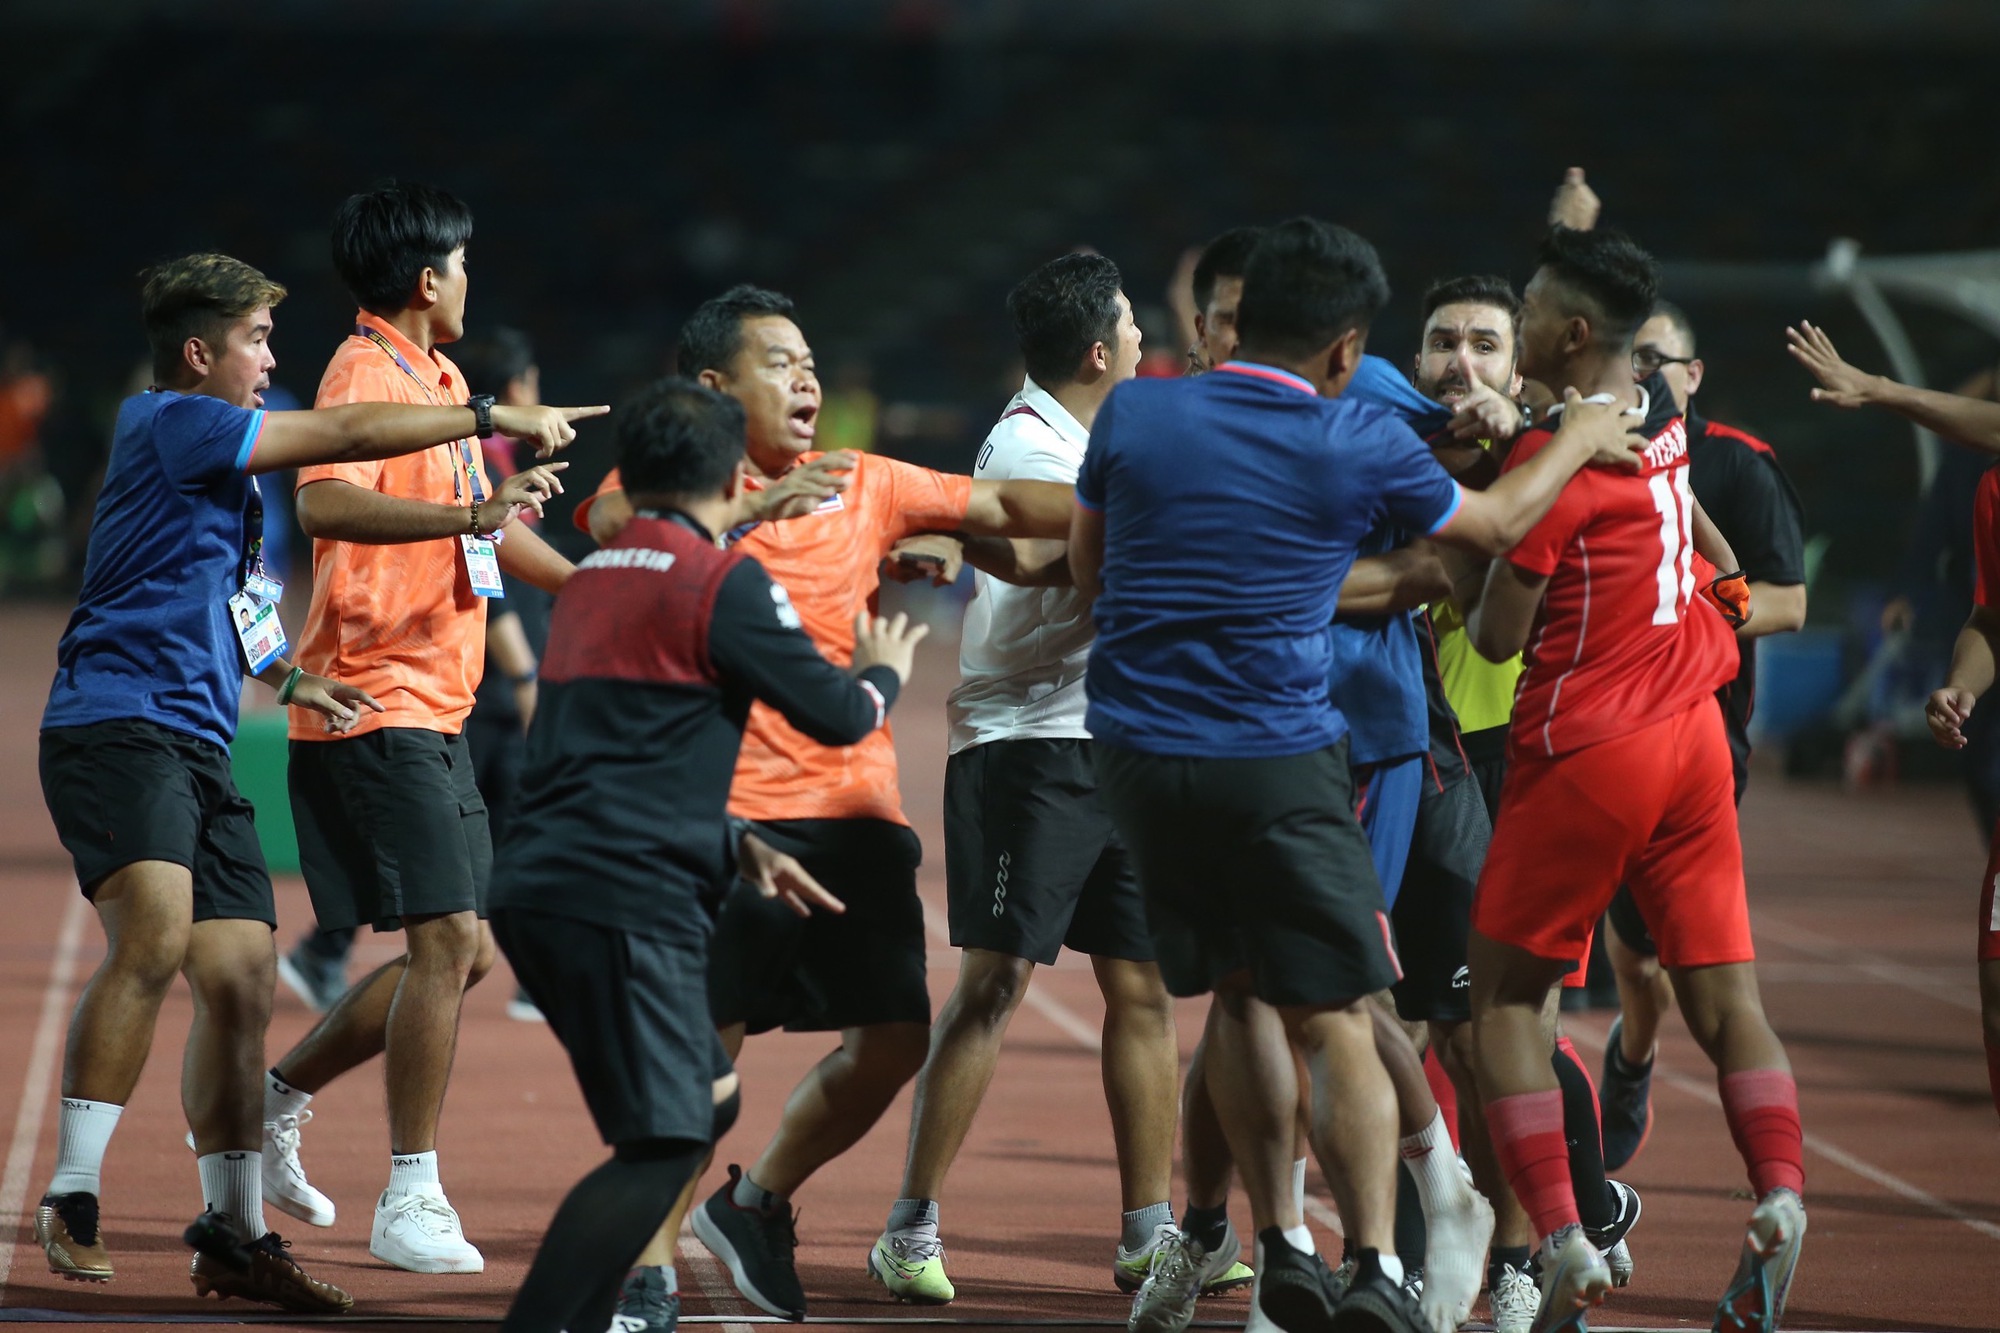 Cầu thủ Thái Lan kể về giây phút gạt hết tất cả để lao vào ẩu đả với Indonesia: Họ chạy qua và lắc lư - Ảnh 2.